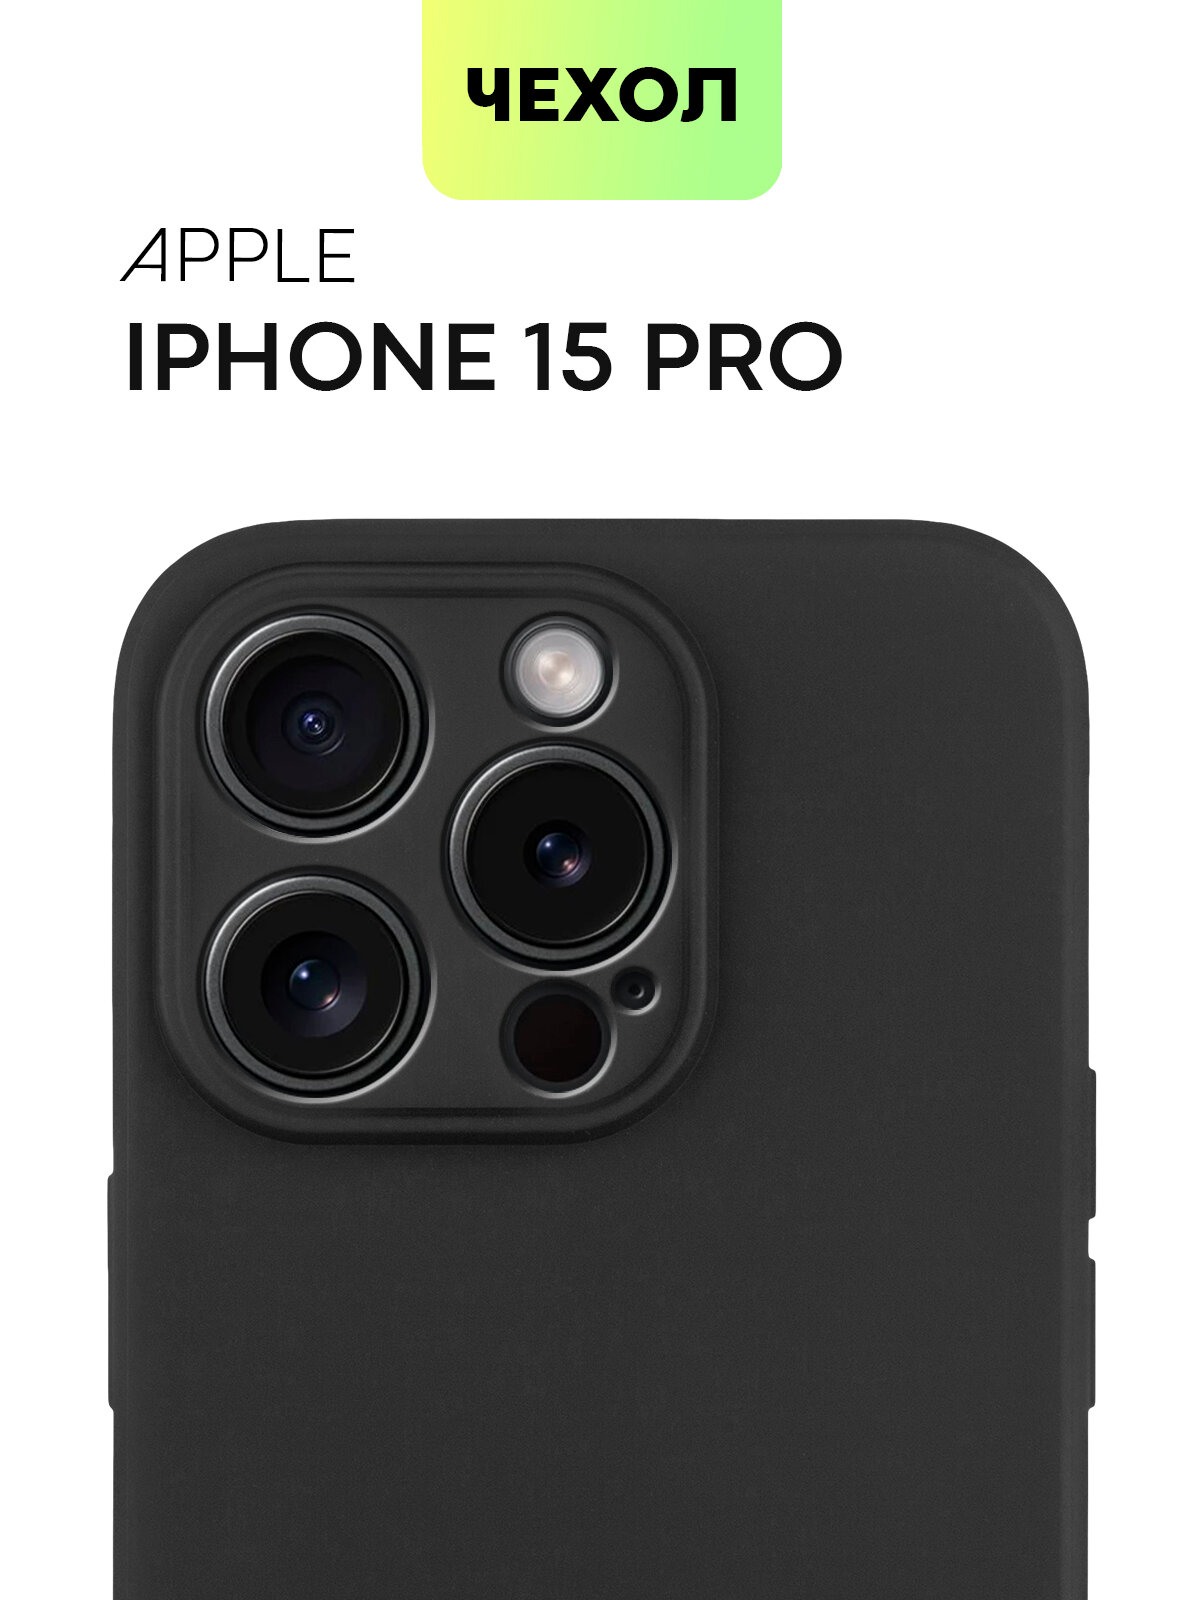 Чехол BROSCORP для Apple iPhone 15 Pro (Эпл Айфон 15 Про), тонкий, силиконовый чехол, с матовым покрытием и защитой камер, черный